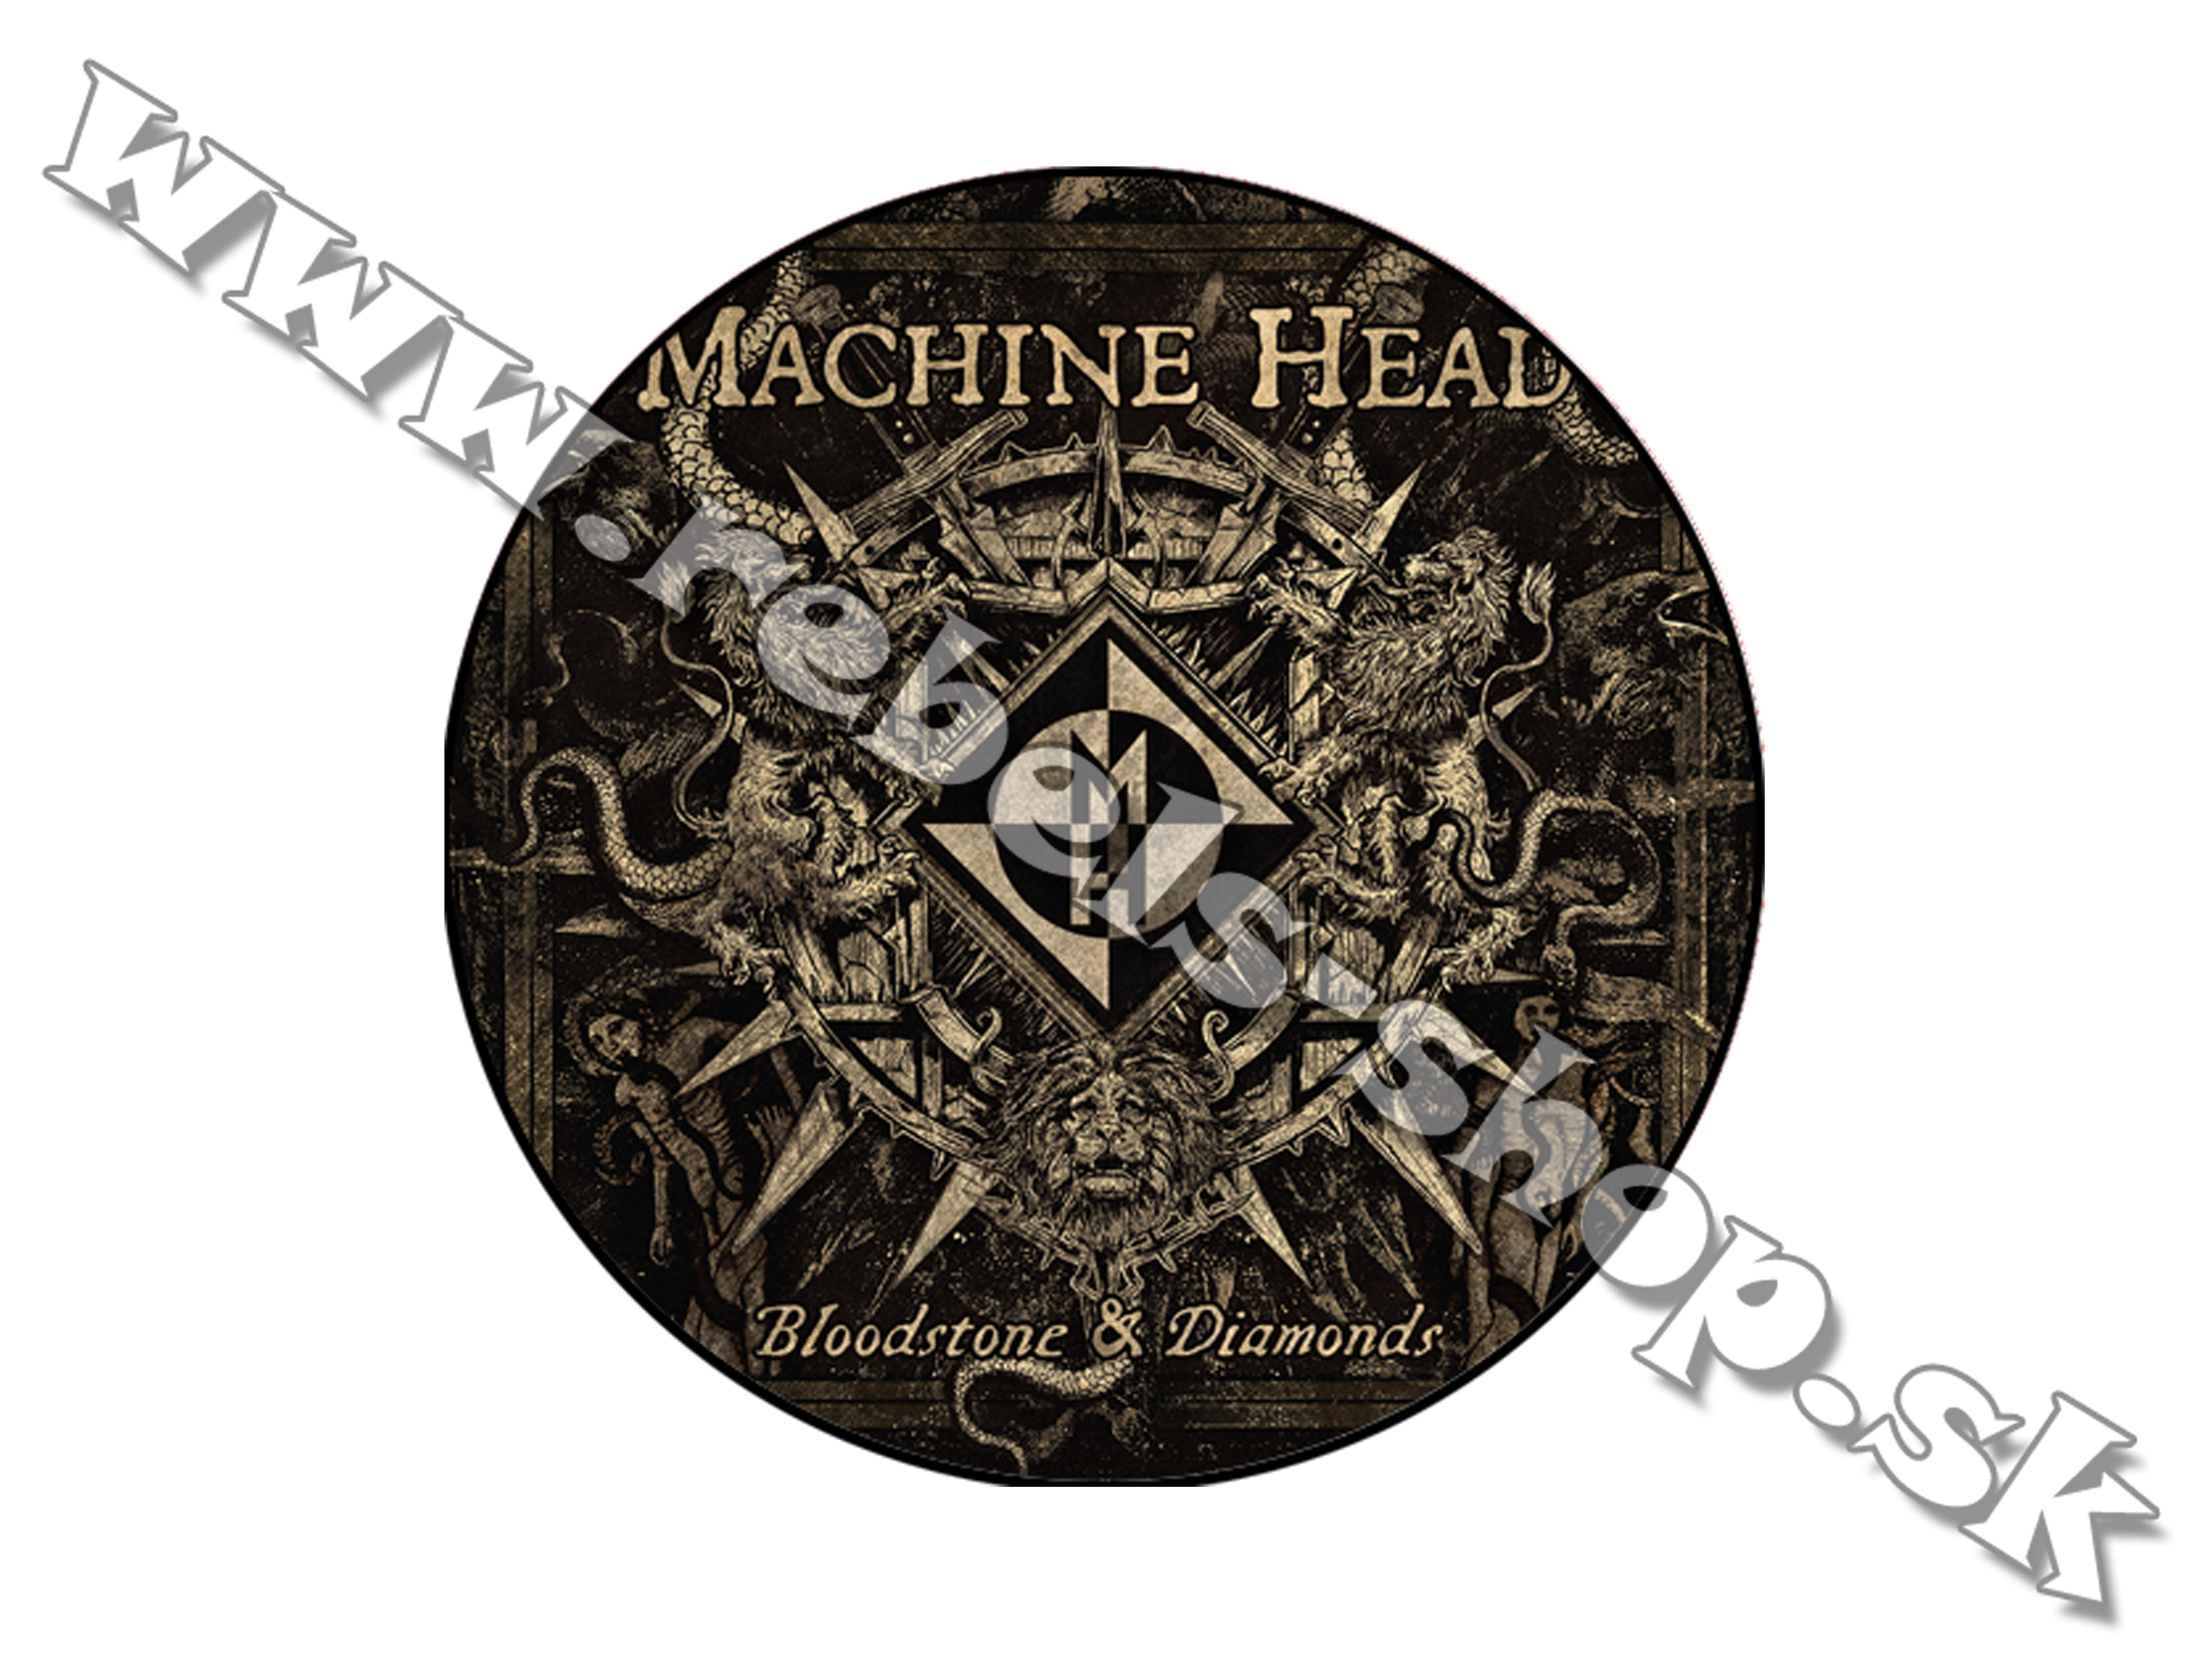 Odznak "Machine Head"